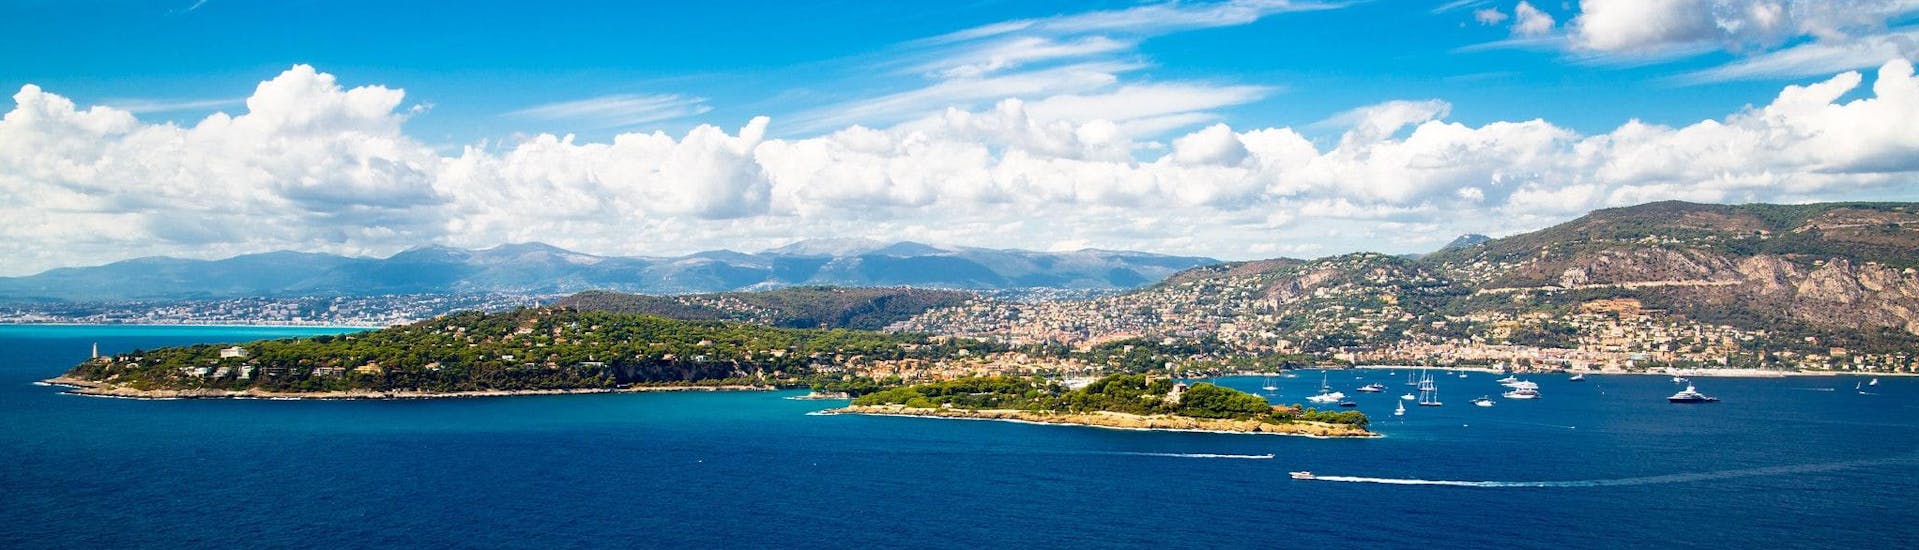 Vue de la Côte d'Azur autour de St-Jean-Cap-Ferrat, une destination populaire pour les balades en bateau depuis Nice.